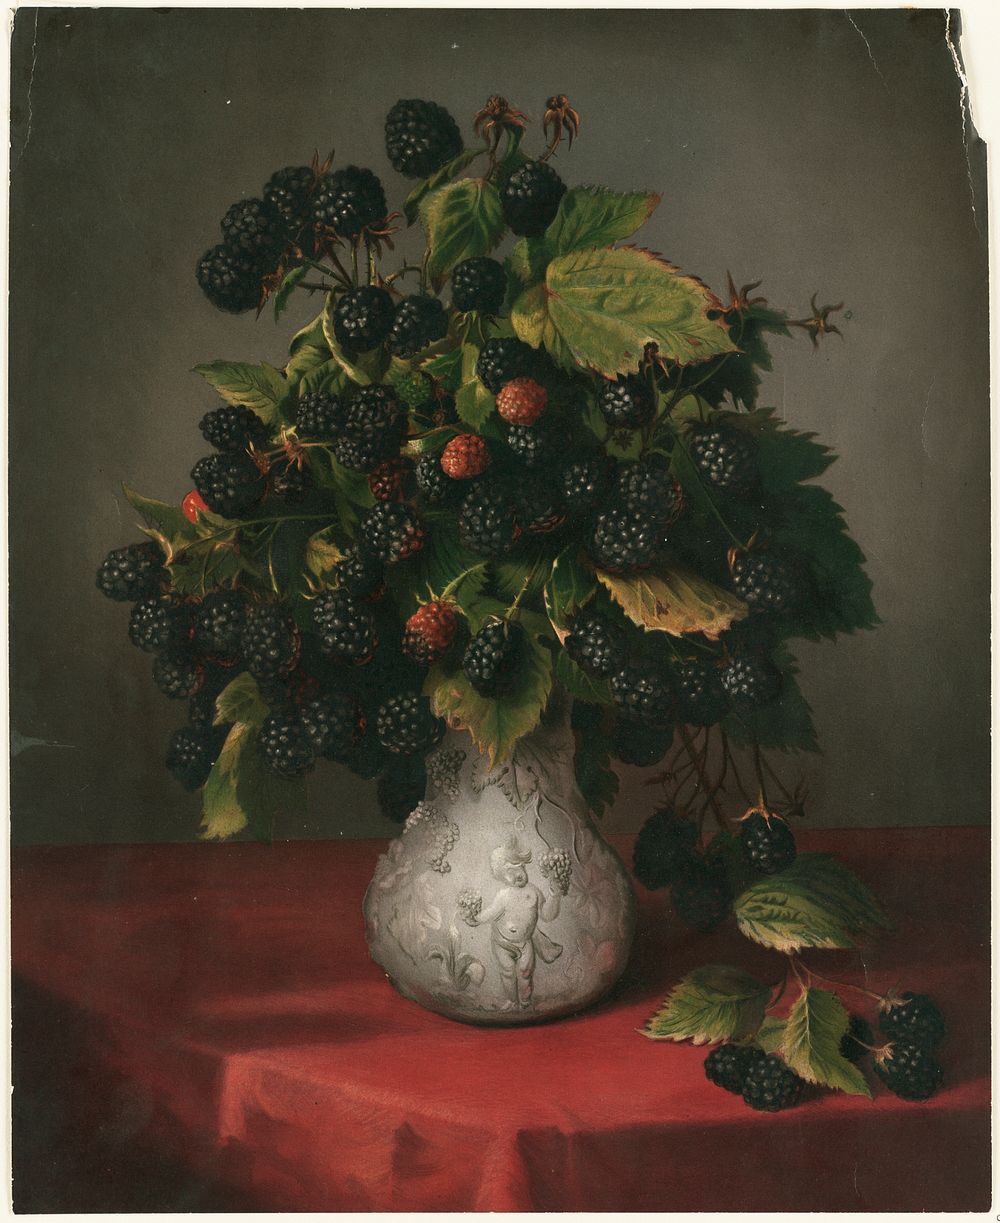             Blackberries in a vase          